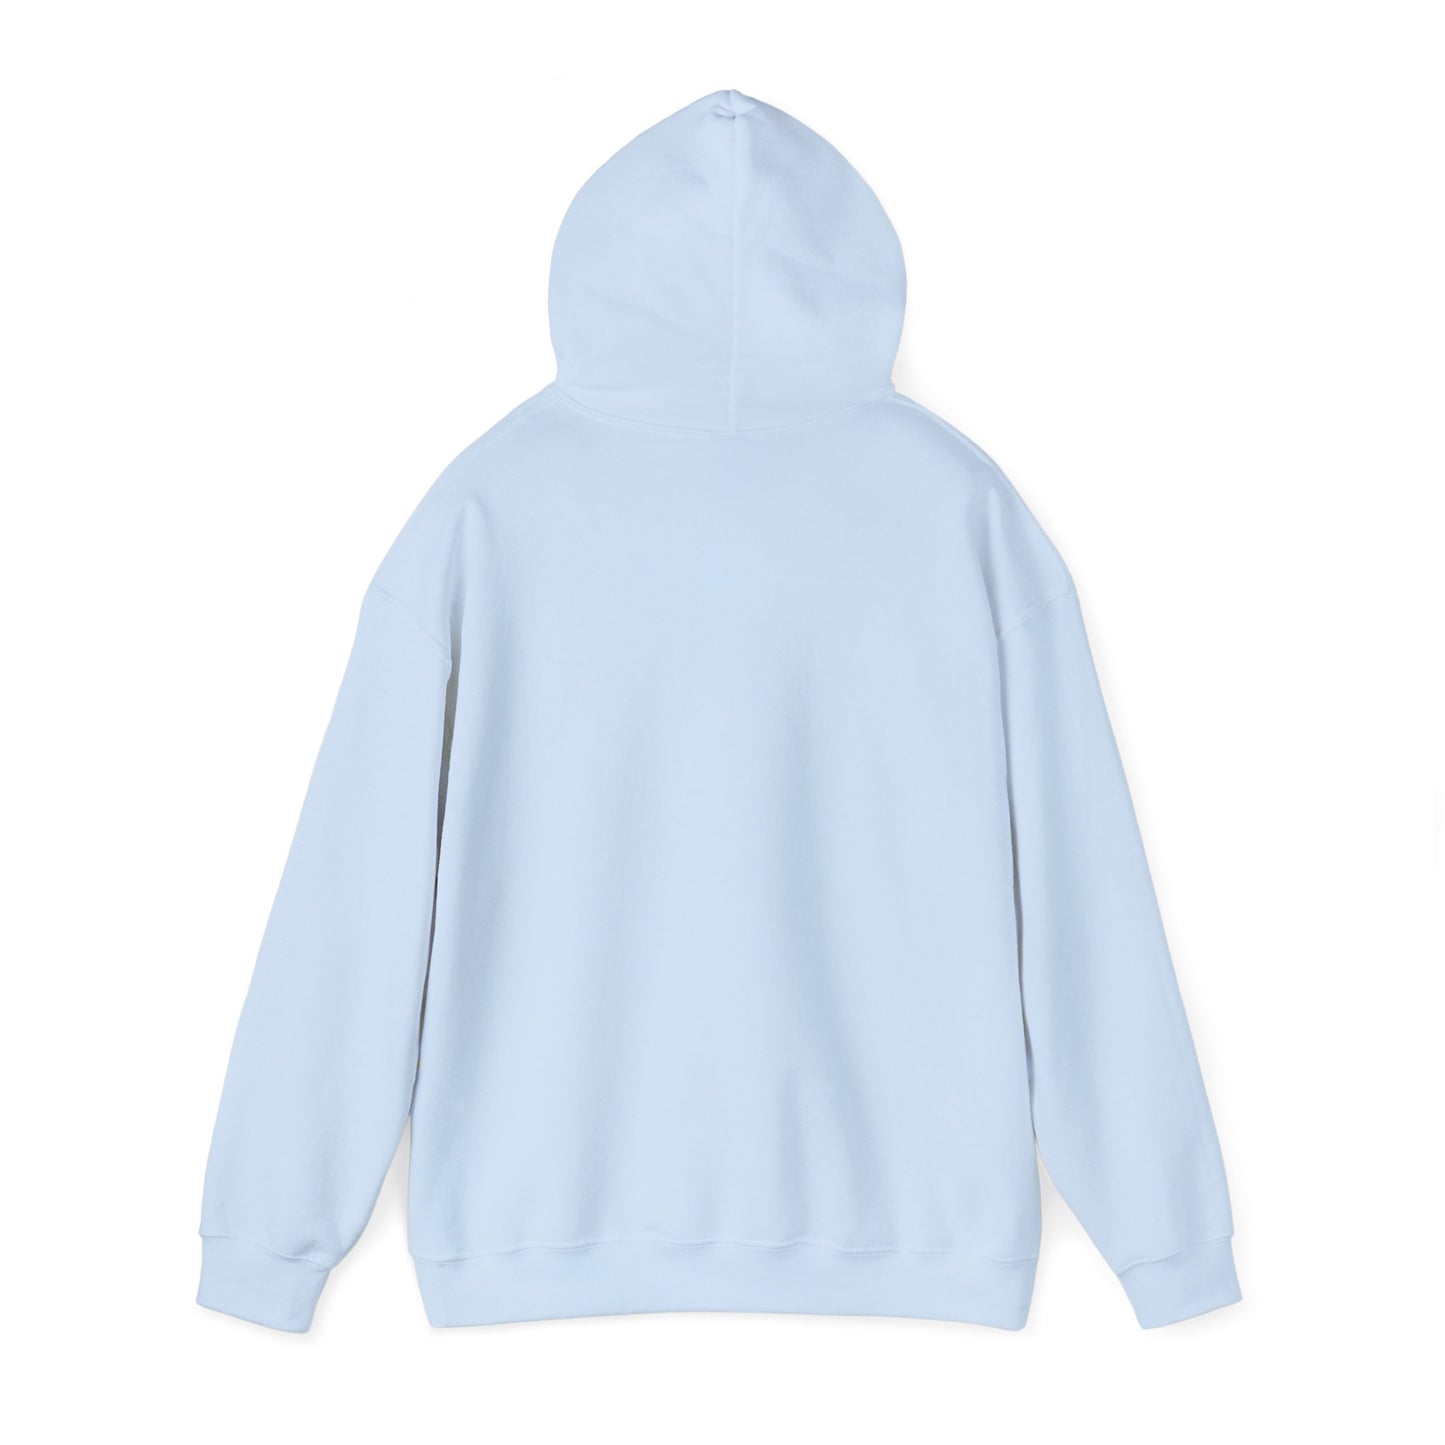 Women Life Freedom III - Unisex Heavy Blend™ Hooded Sweatshirt